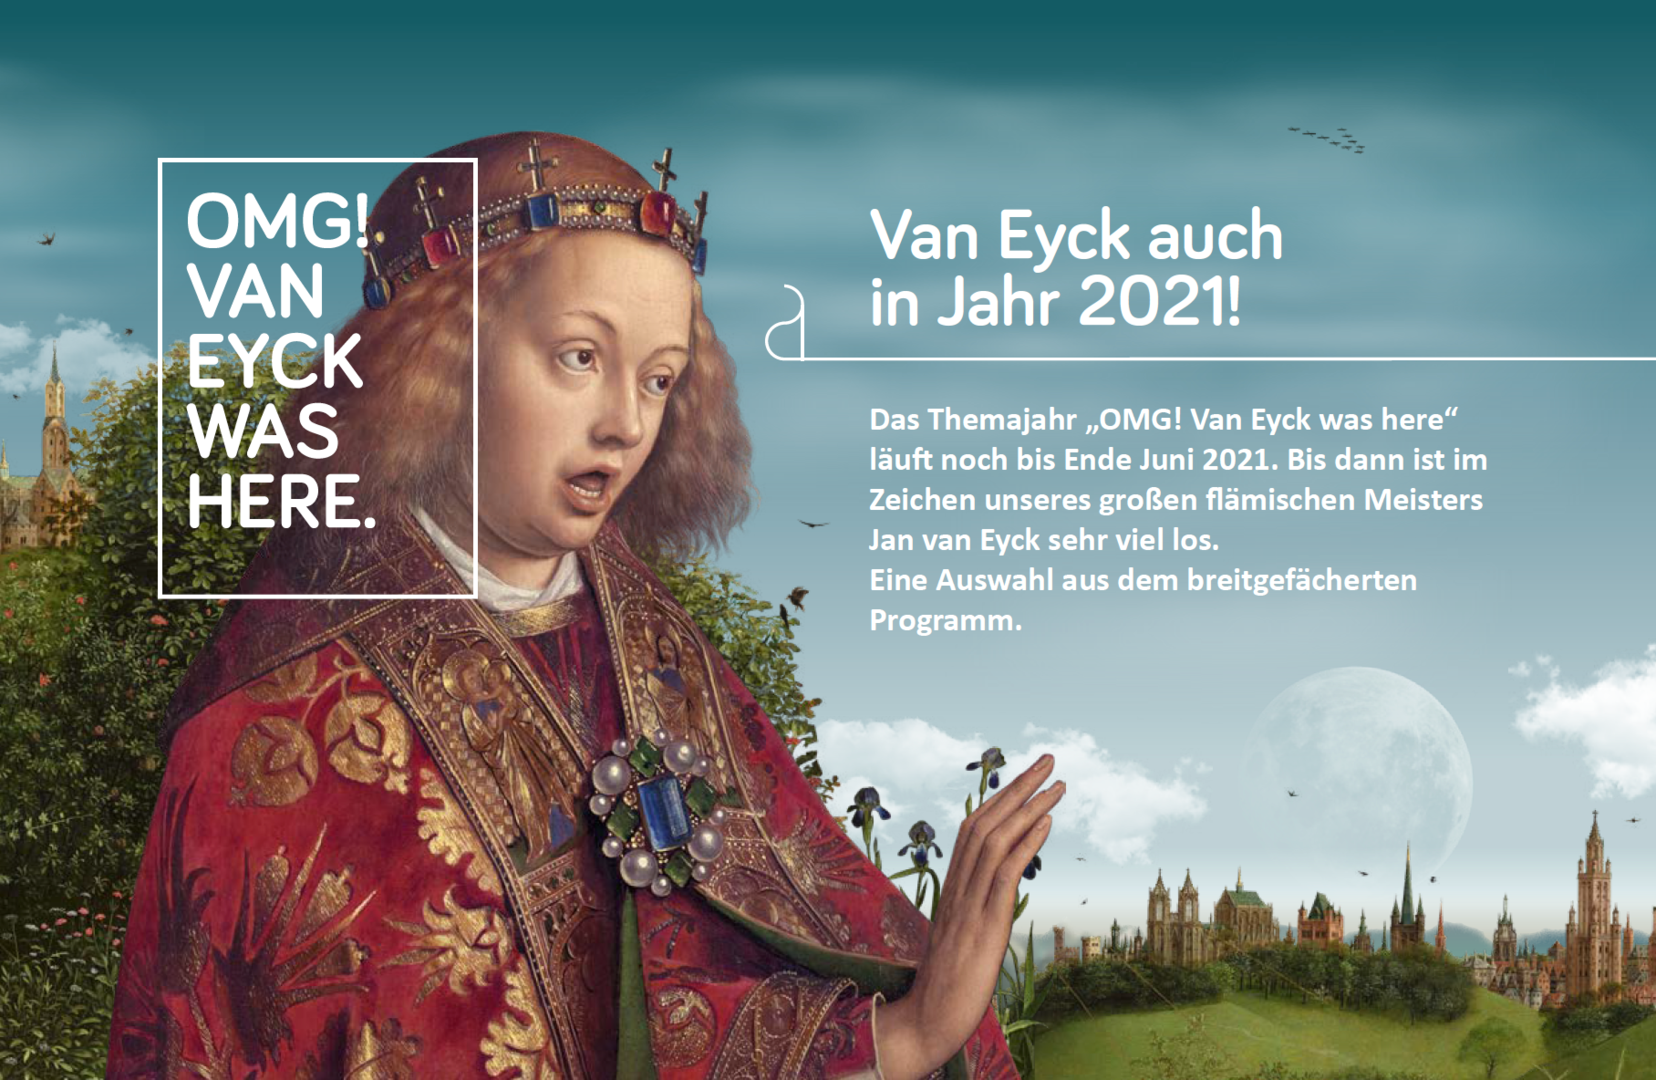 OMG! Van Eyck was here. Auch in Jahr 2021!